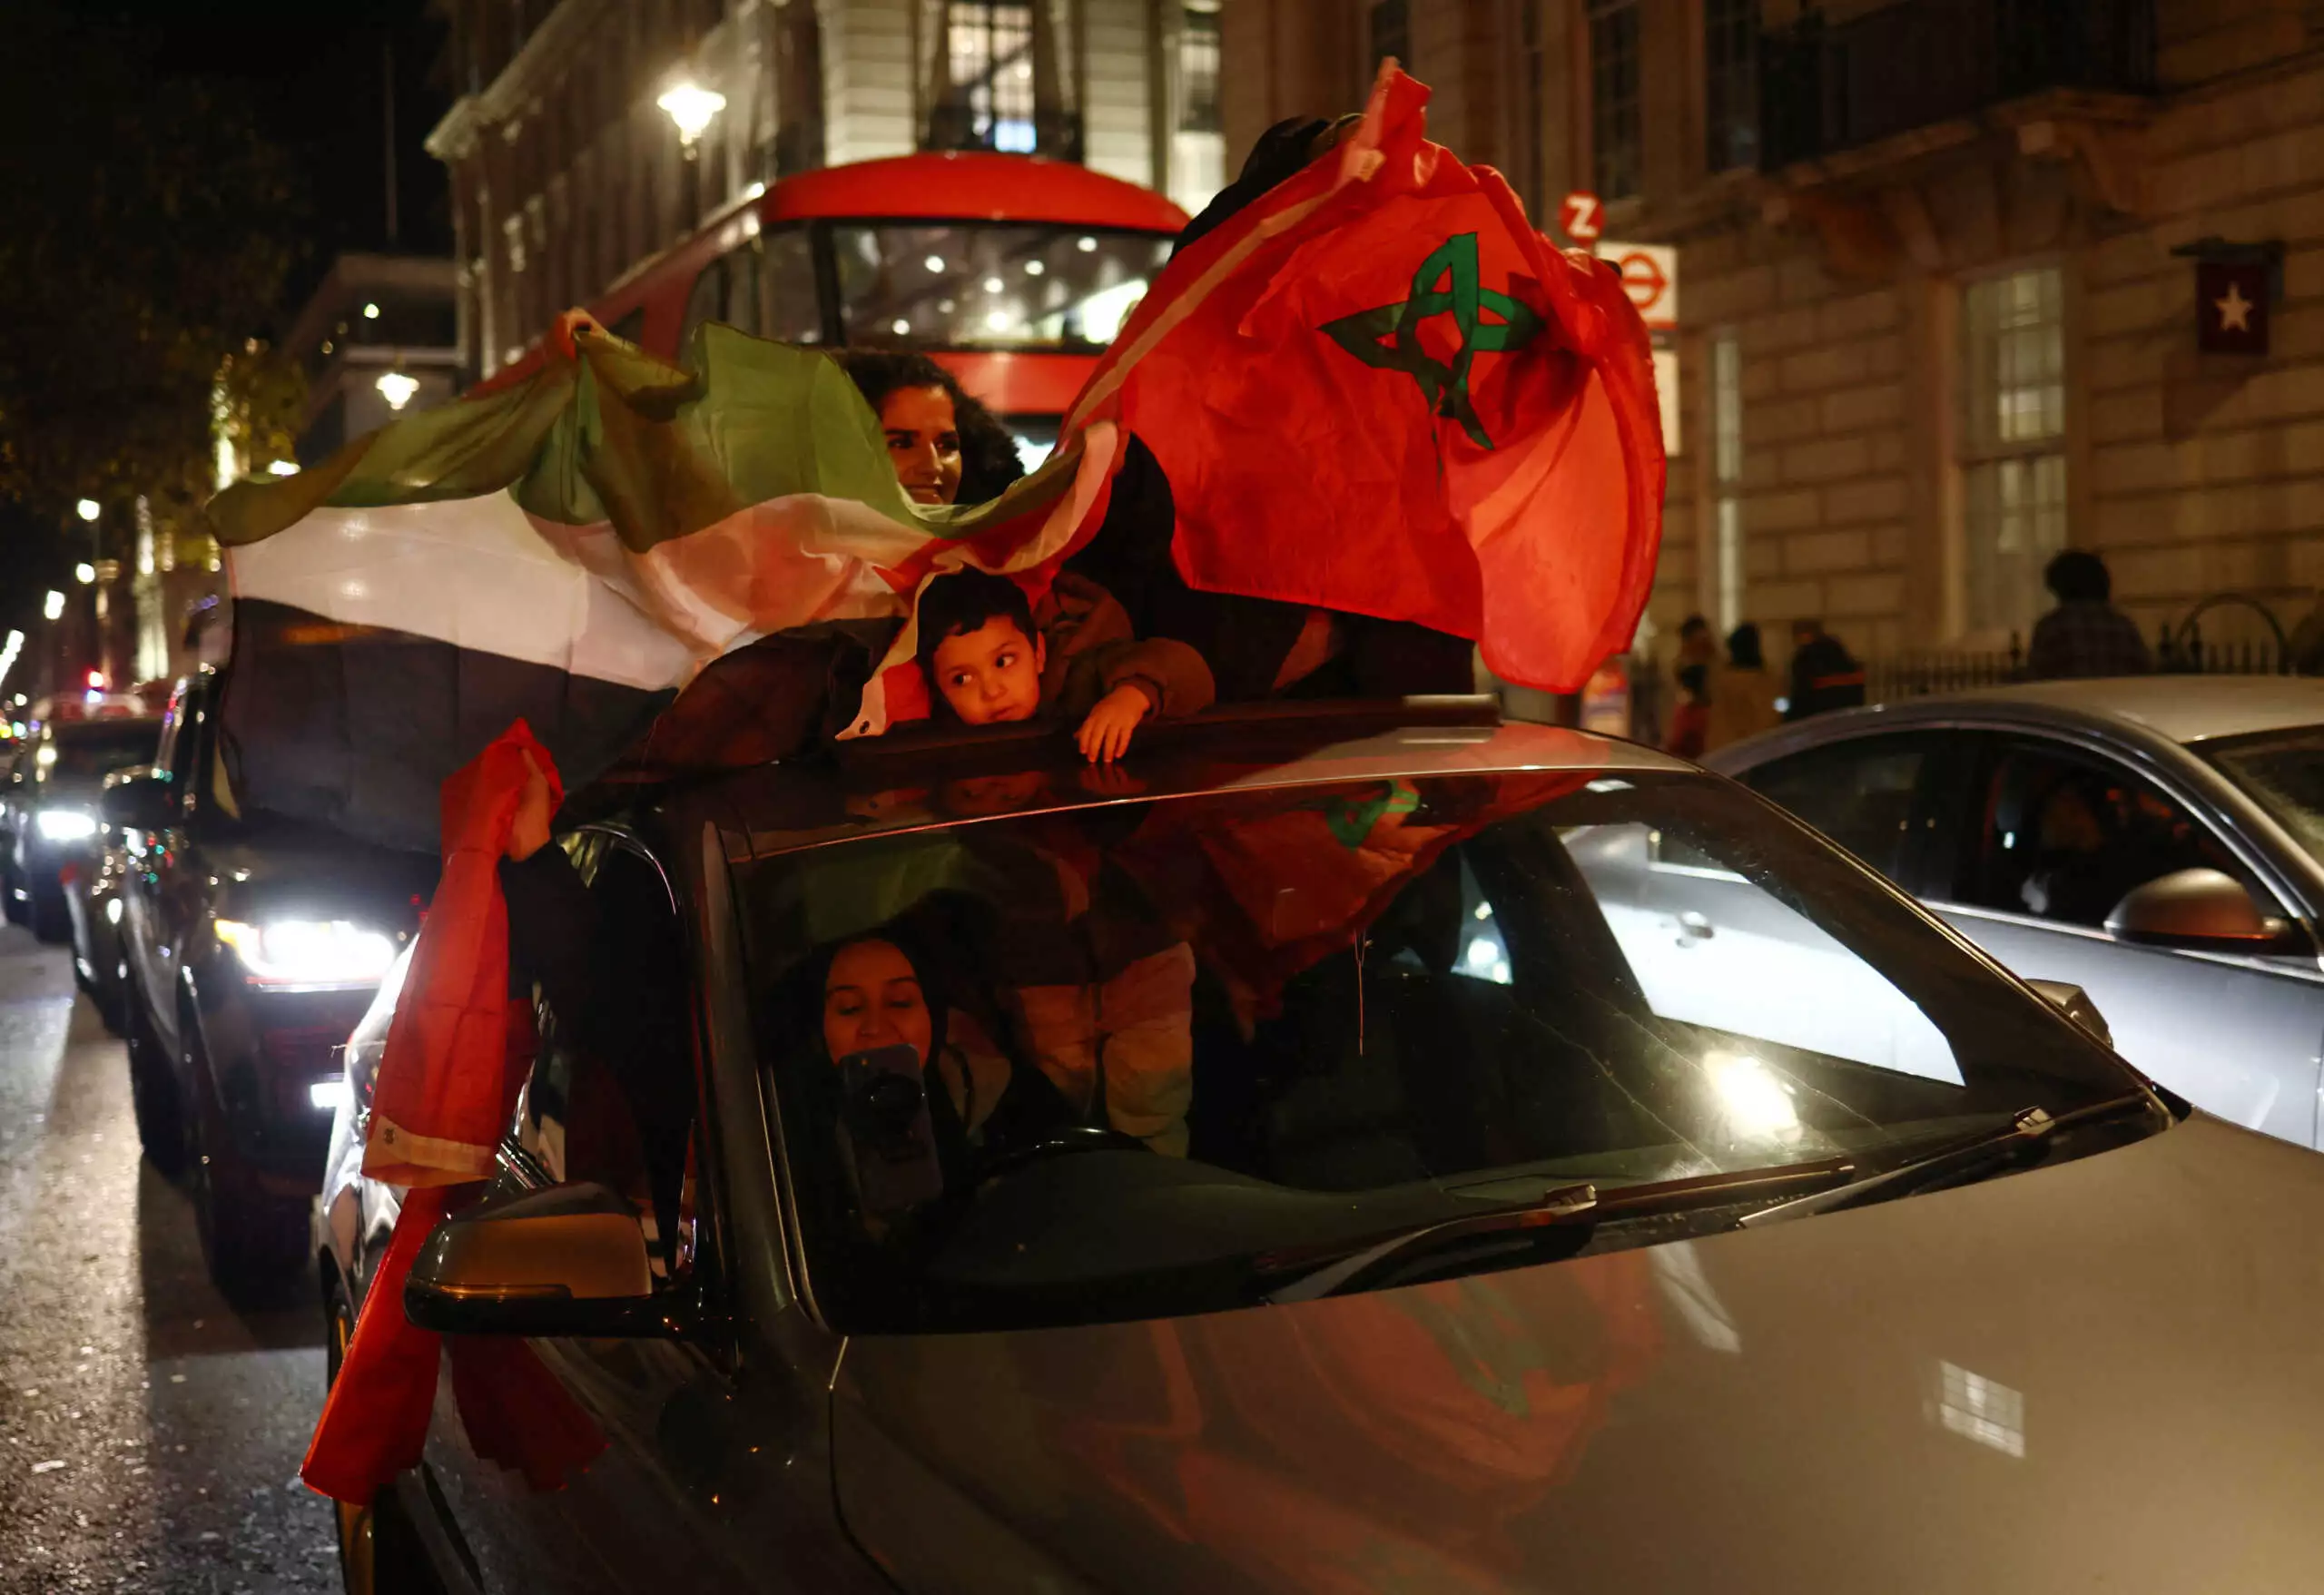 Μουντιάλ 2022: Σε παροξυσμό οι Μαροκινοί – Αναμένονται 45.000 στις εξέδρες του “Αλ Μπάιτ”